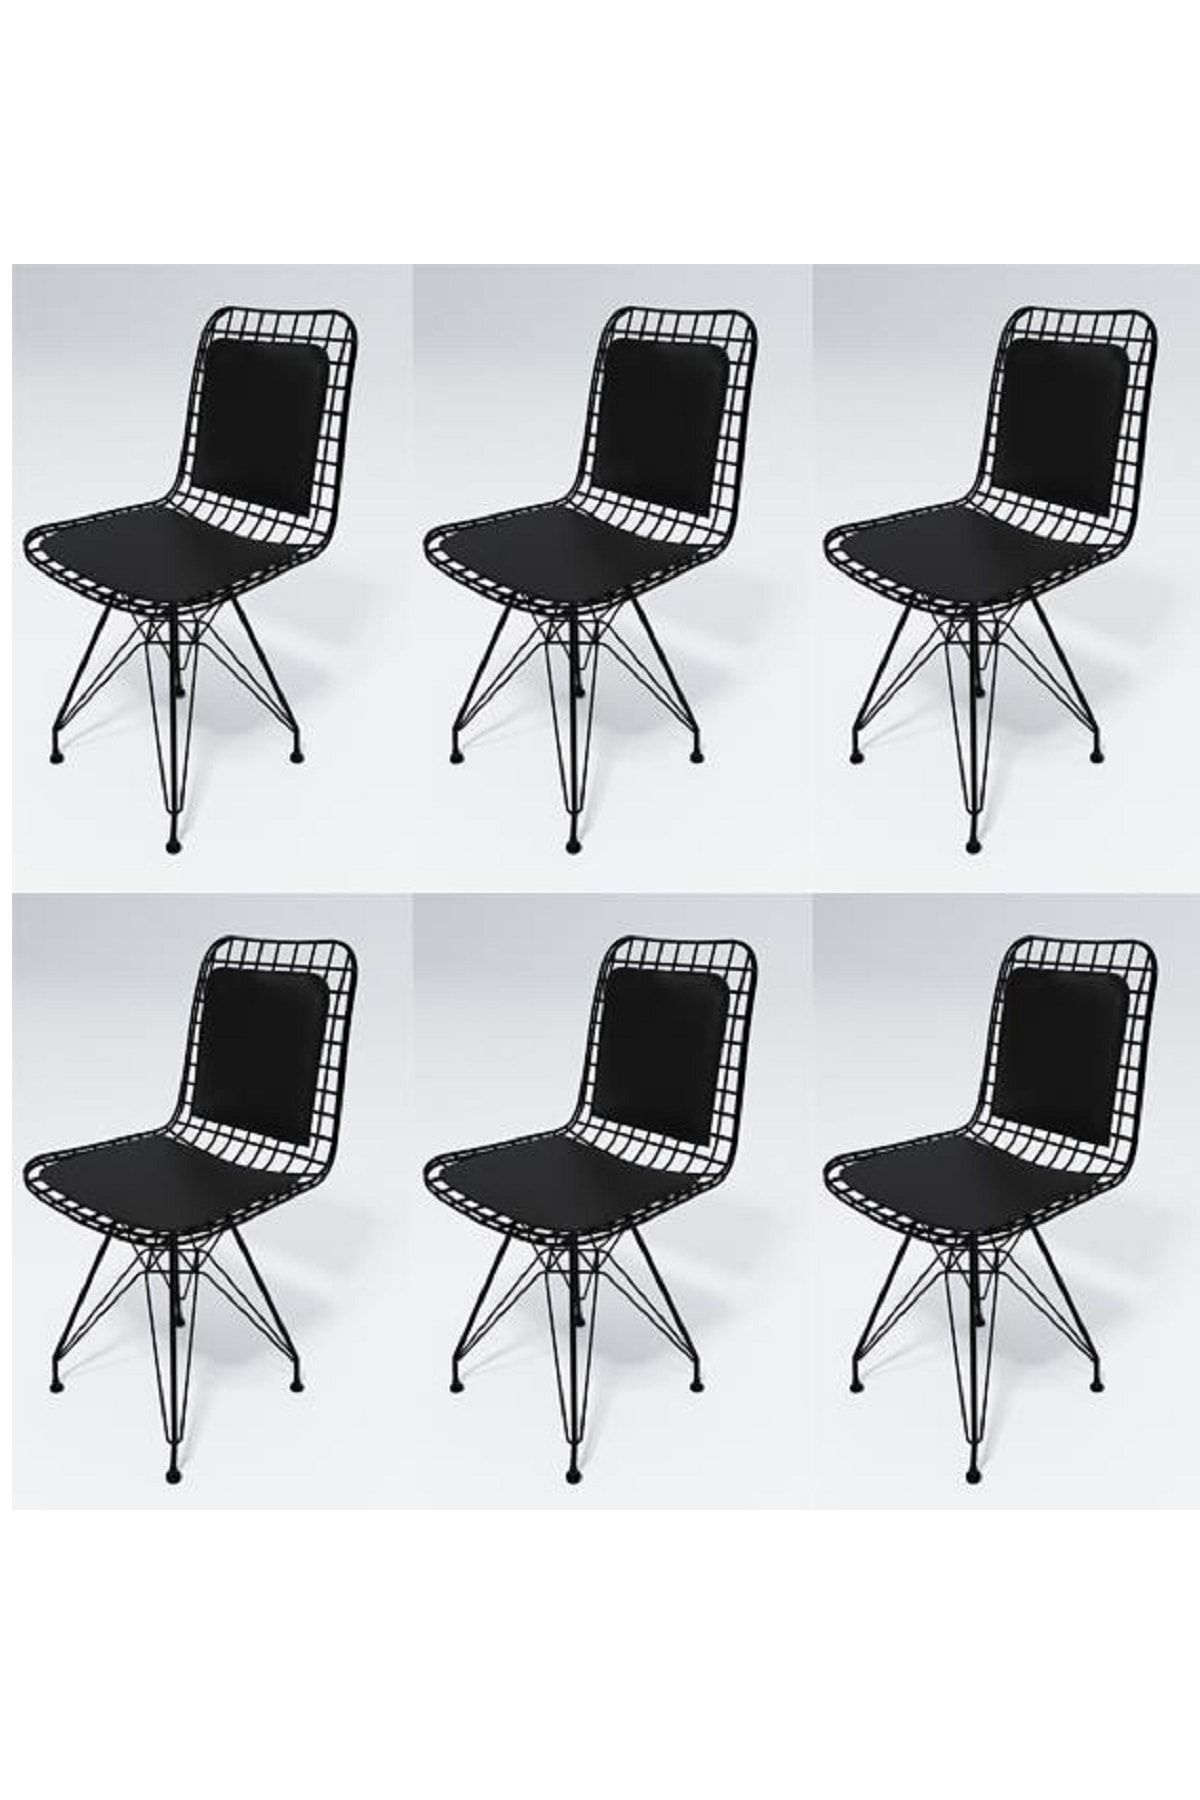 Kenzlife Knsz Kafes Tel Sandalyesi 6 Lı Mazlum Syhsyh Sırt Minderli Ofis Cafe Bahçe Mutfak